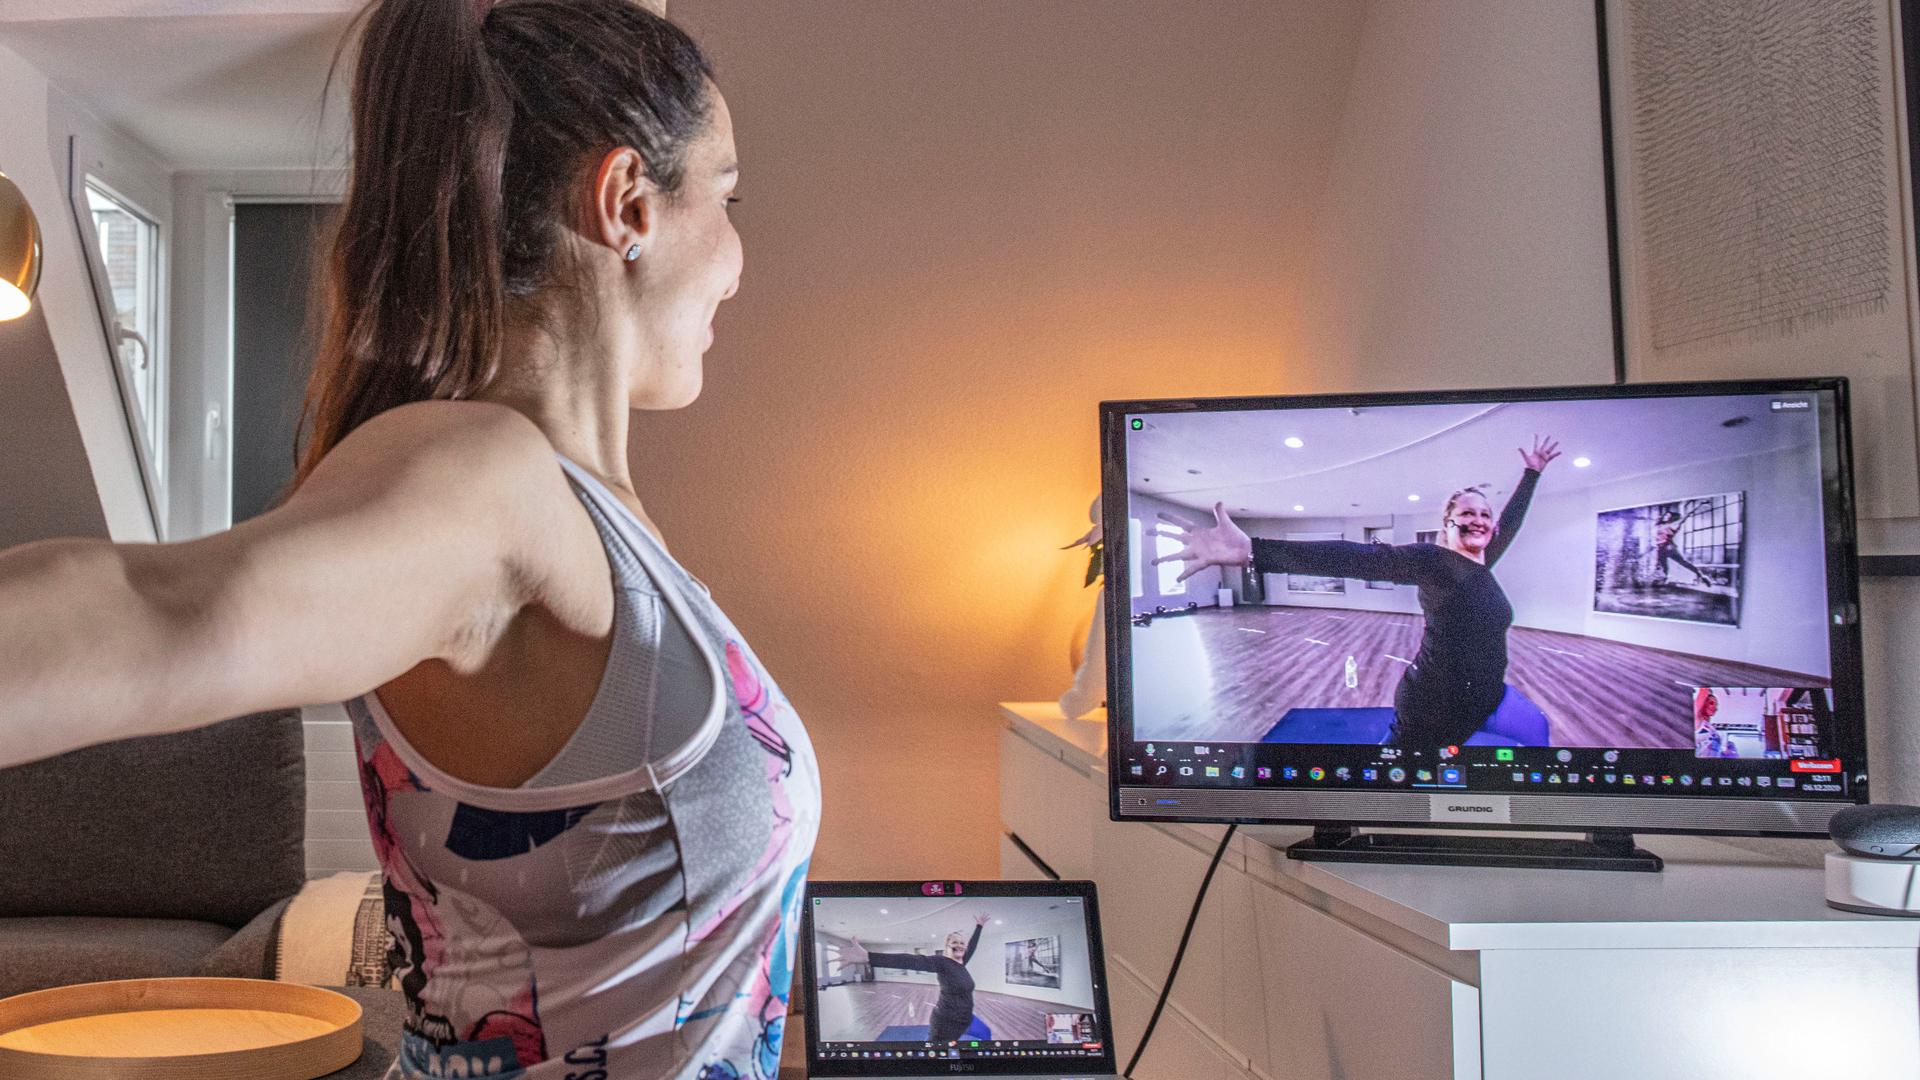 Fit am Bildschirm: Eine junge Frau macht einen Video-Fitnesskurs